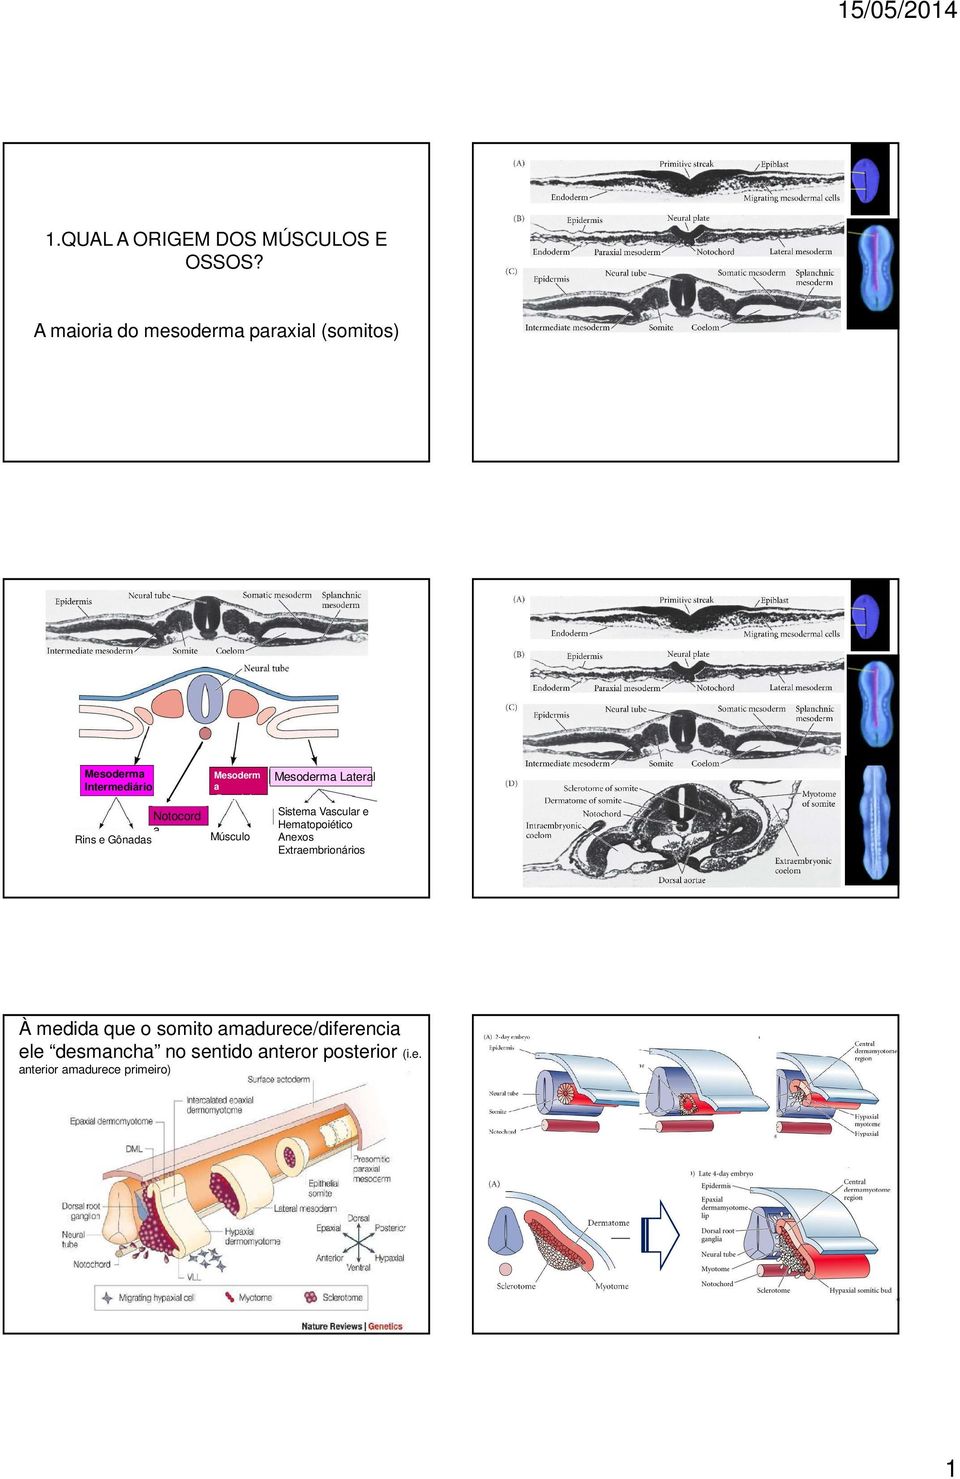 Gônadas Mesoderm a Paraxial Músculo Mesoderma Lateral Sistema Vascular e Hematopoiético